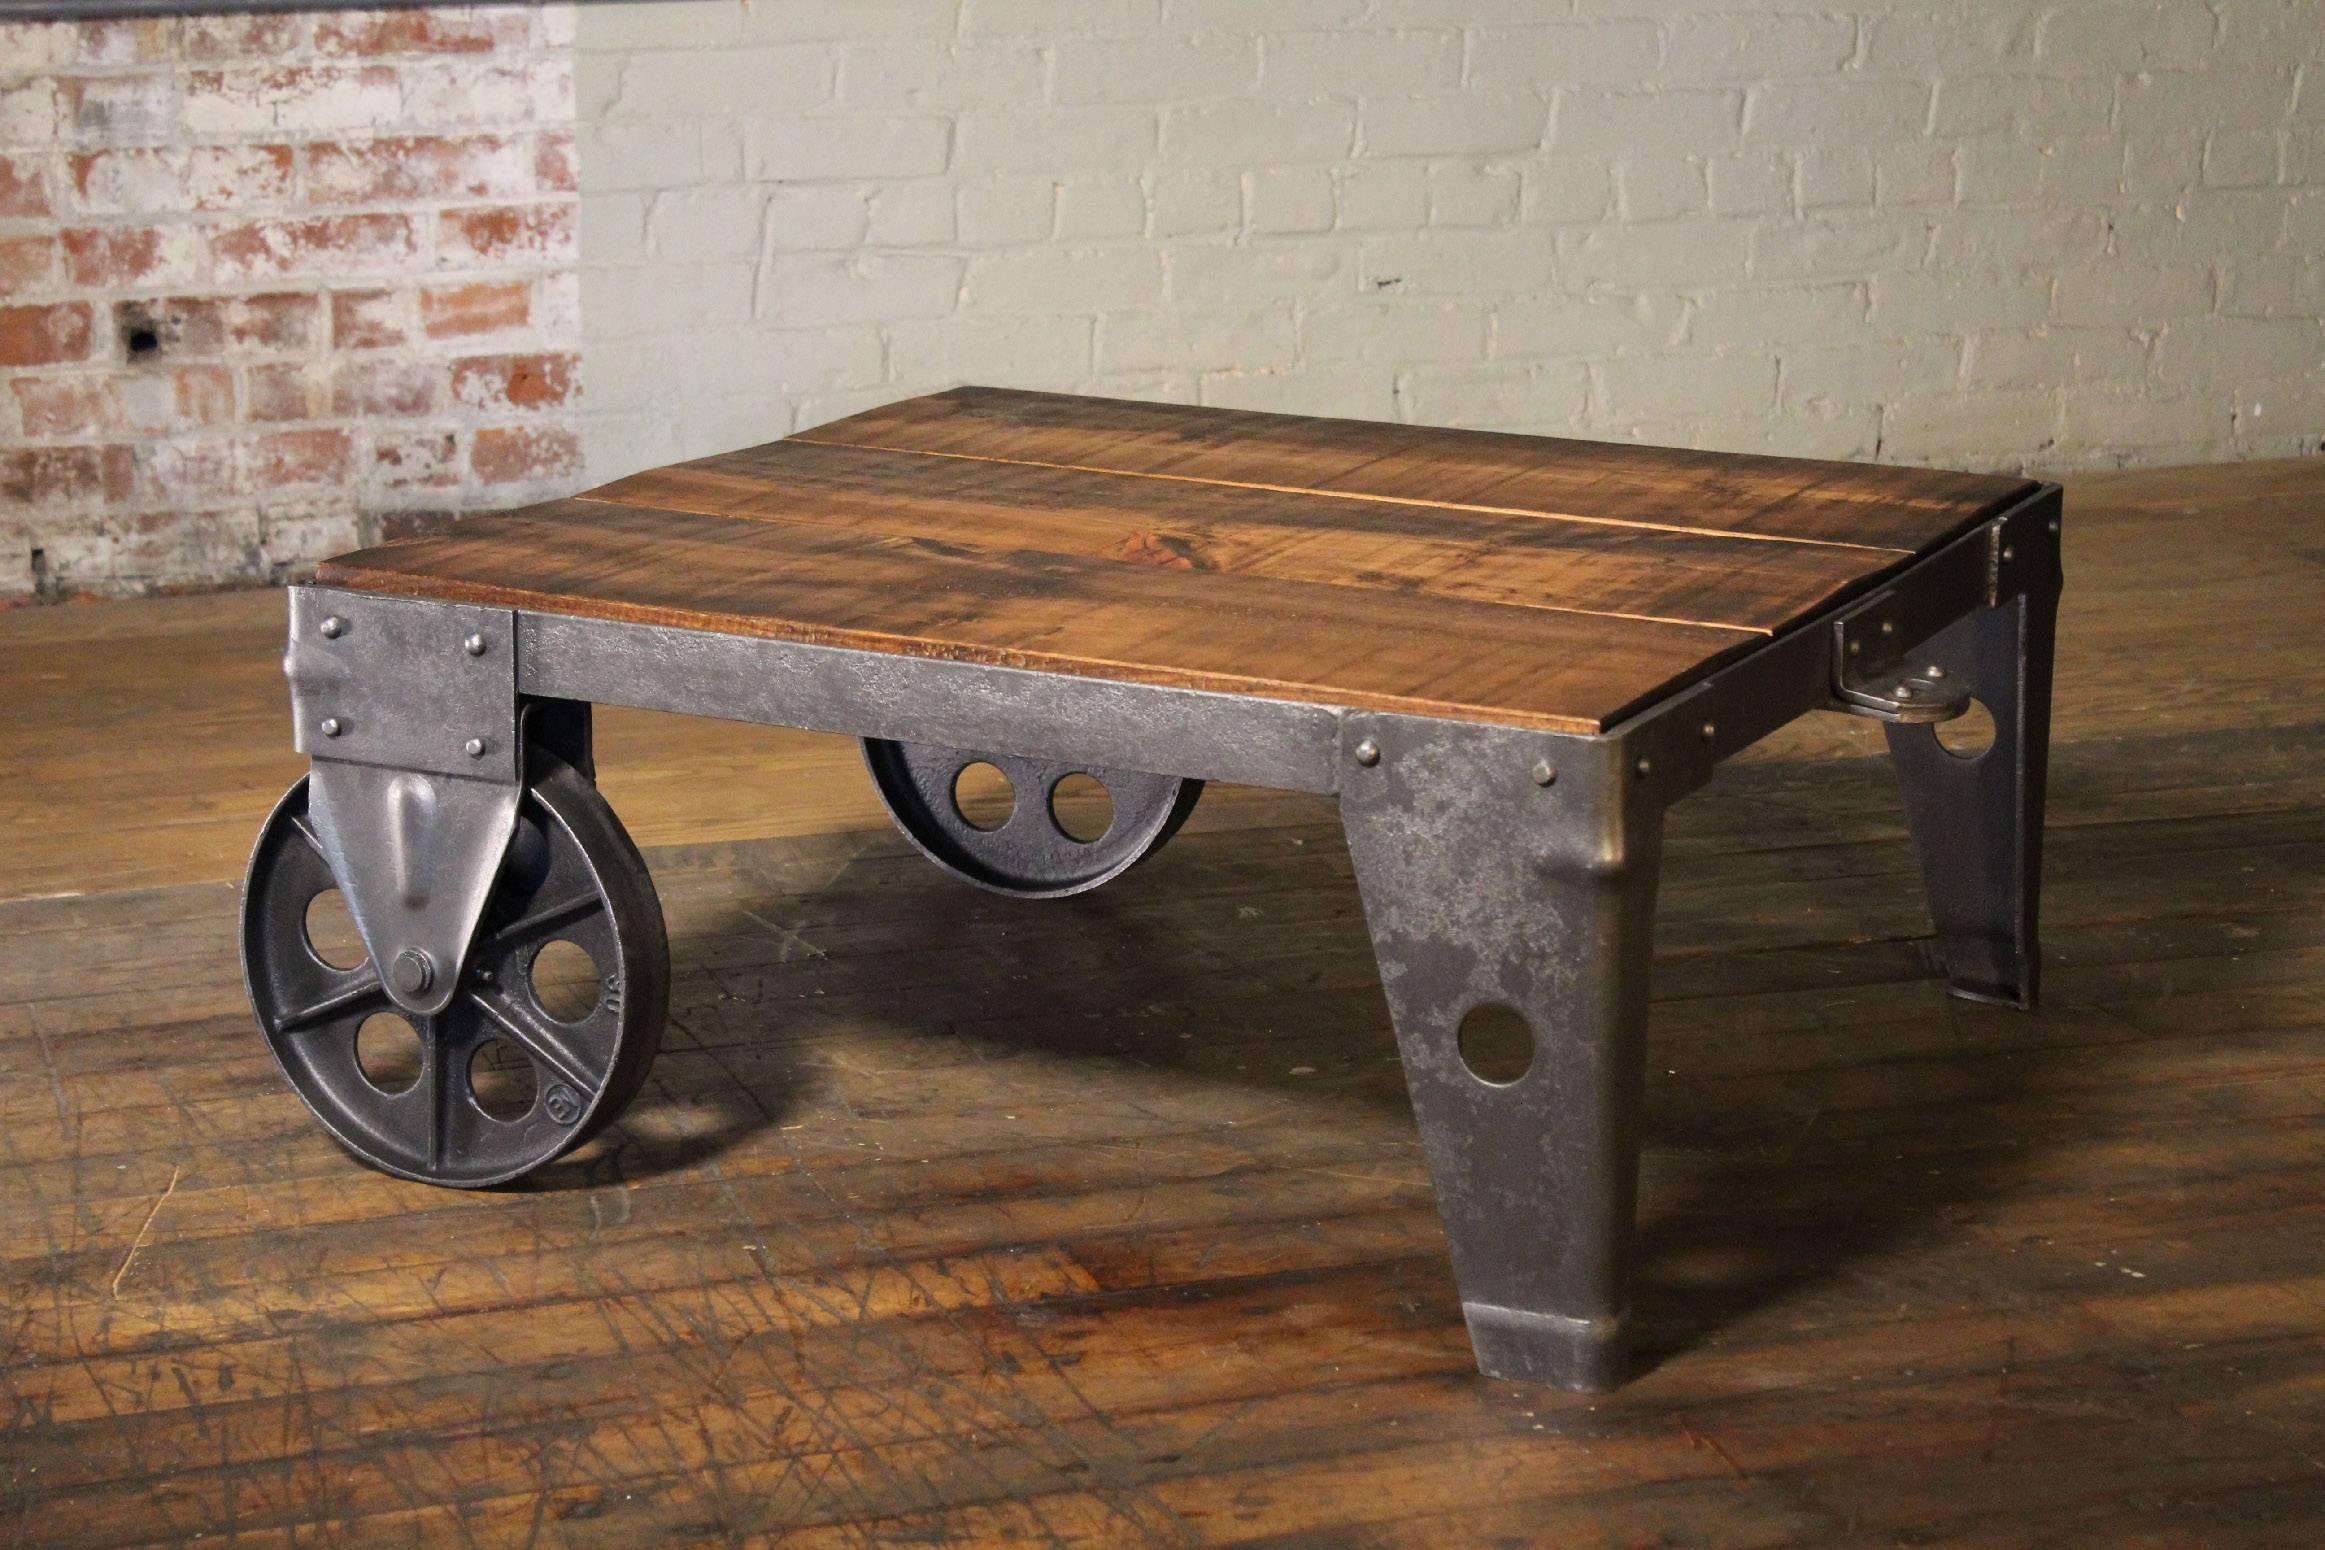 Authentique et originale table basse ou chariot industriel moderne vintage, fabriqué en pin brut, acier, métal et fonte. Le dessus en bois mesure 32